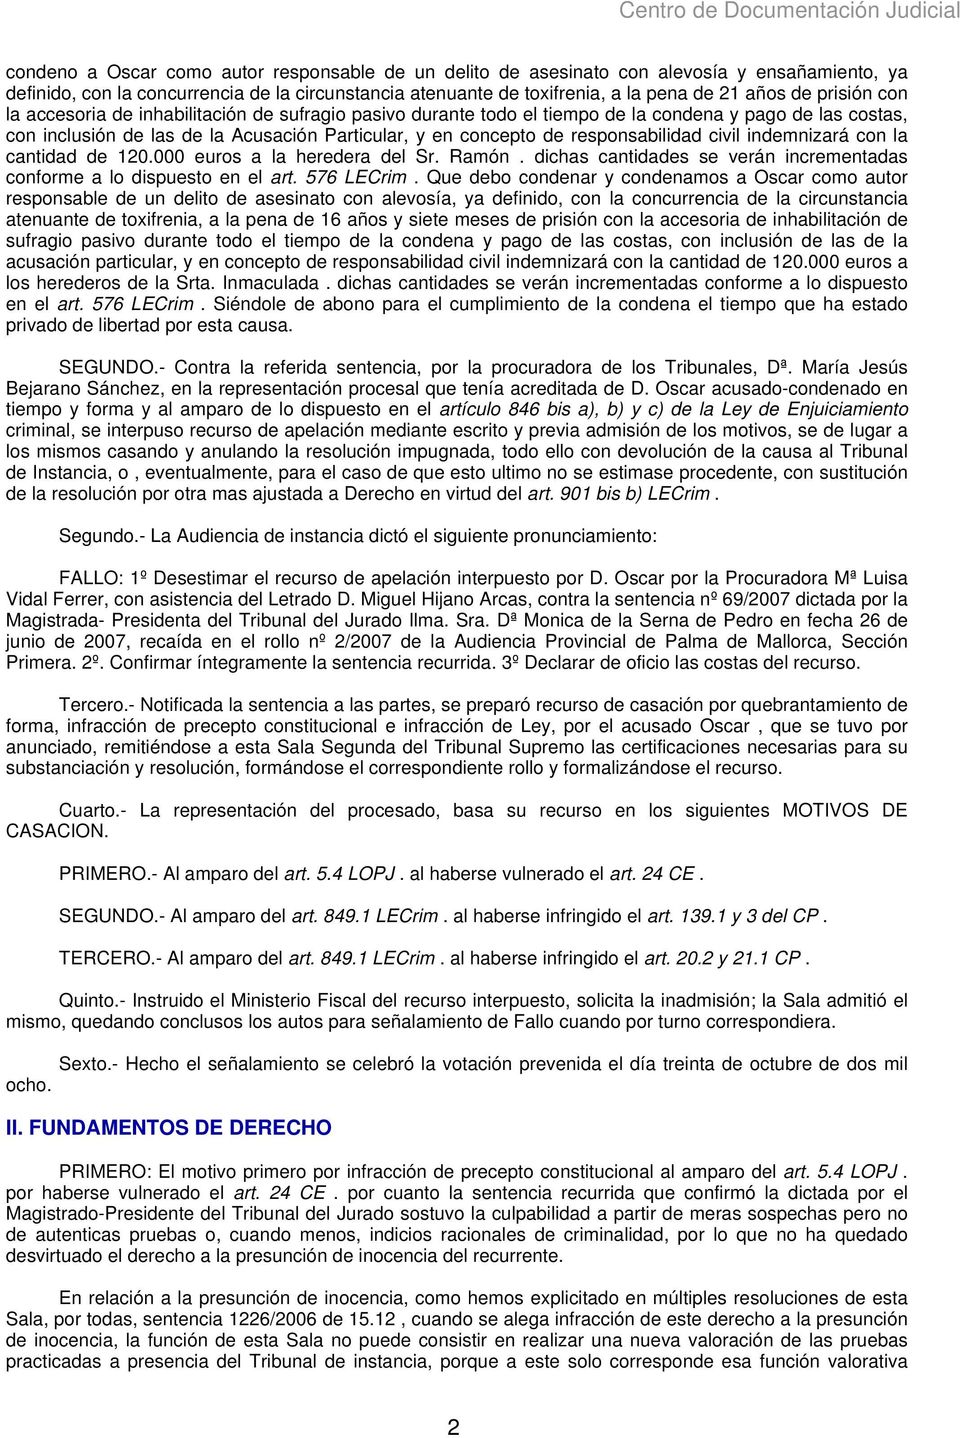 responsabilidad civil indemnizará con la cantidad de 120.000 euros a la heredera del Sr. Ramón. dichas cantidades se verán incrementadas conforme a lo dispuesto en el art. 576 LECrim.